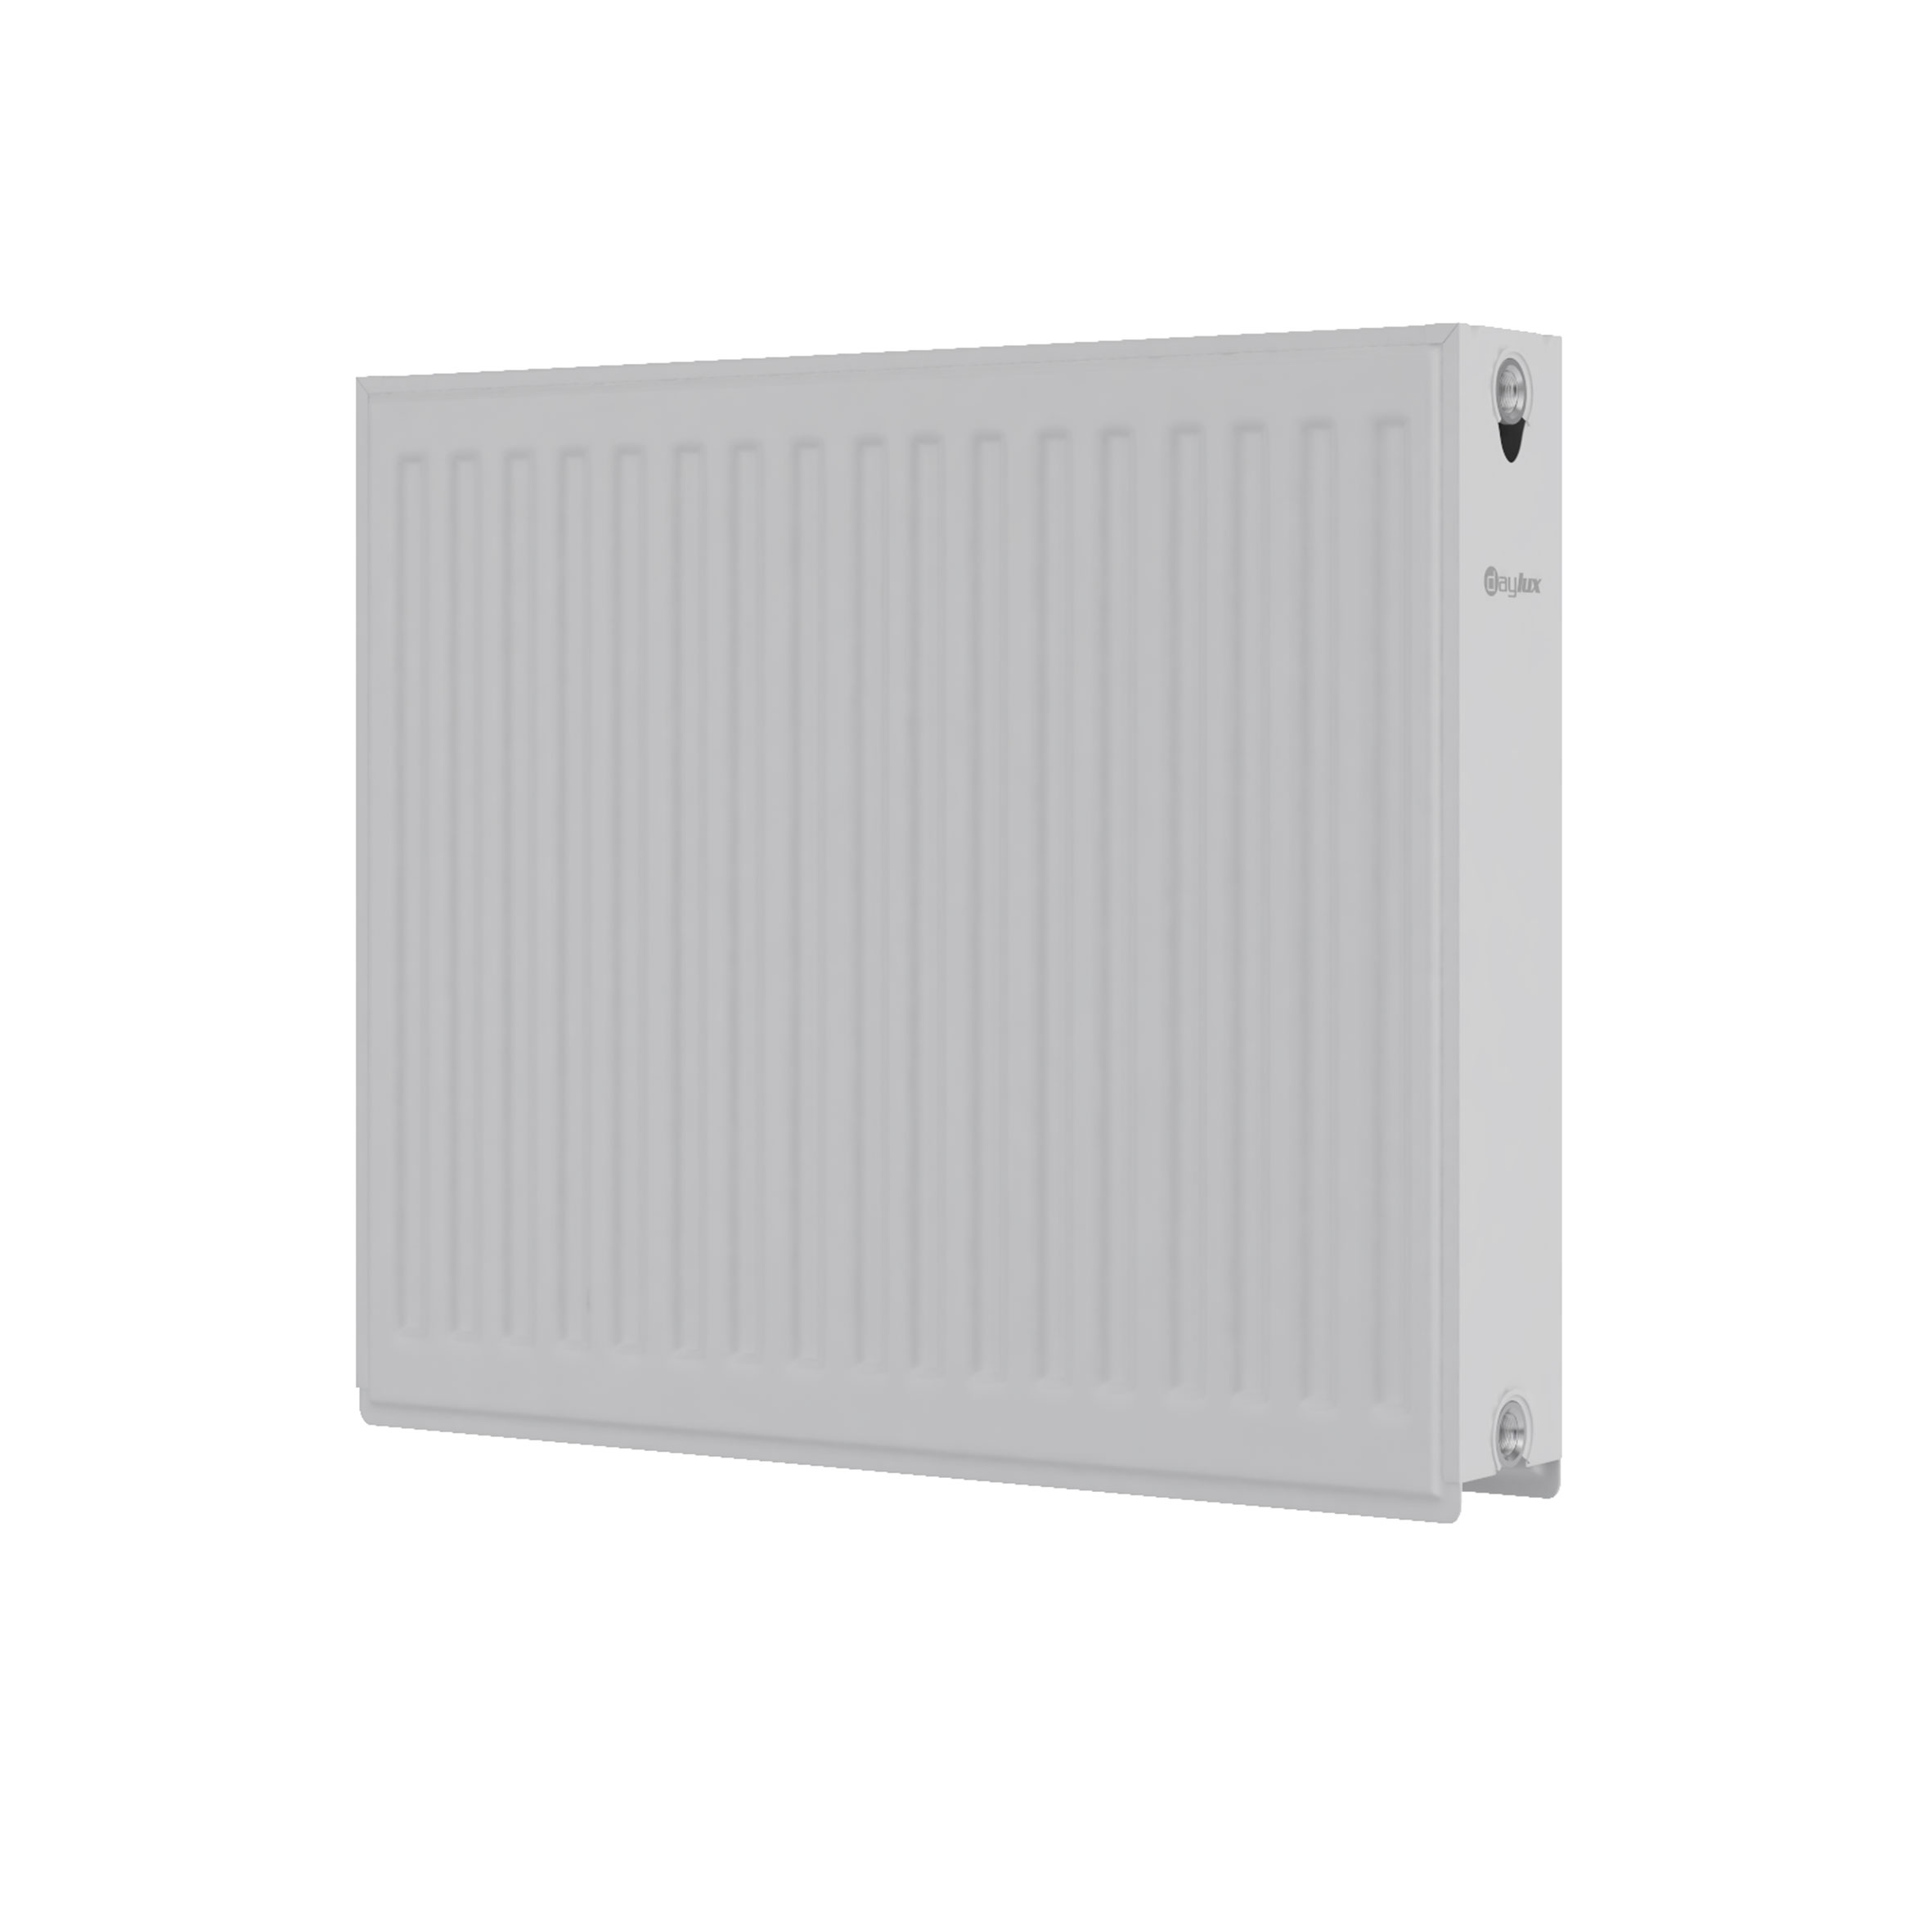 Радиатор для отопления Daylux 22 500x400 (боковое подключение) цена 1369.00 грн - фотография 2